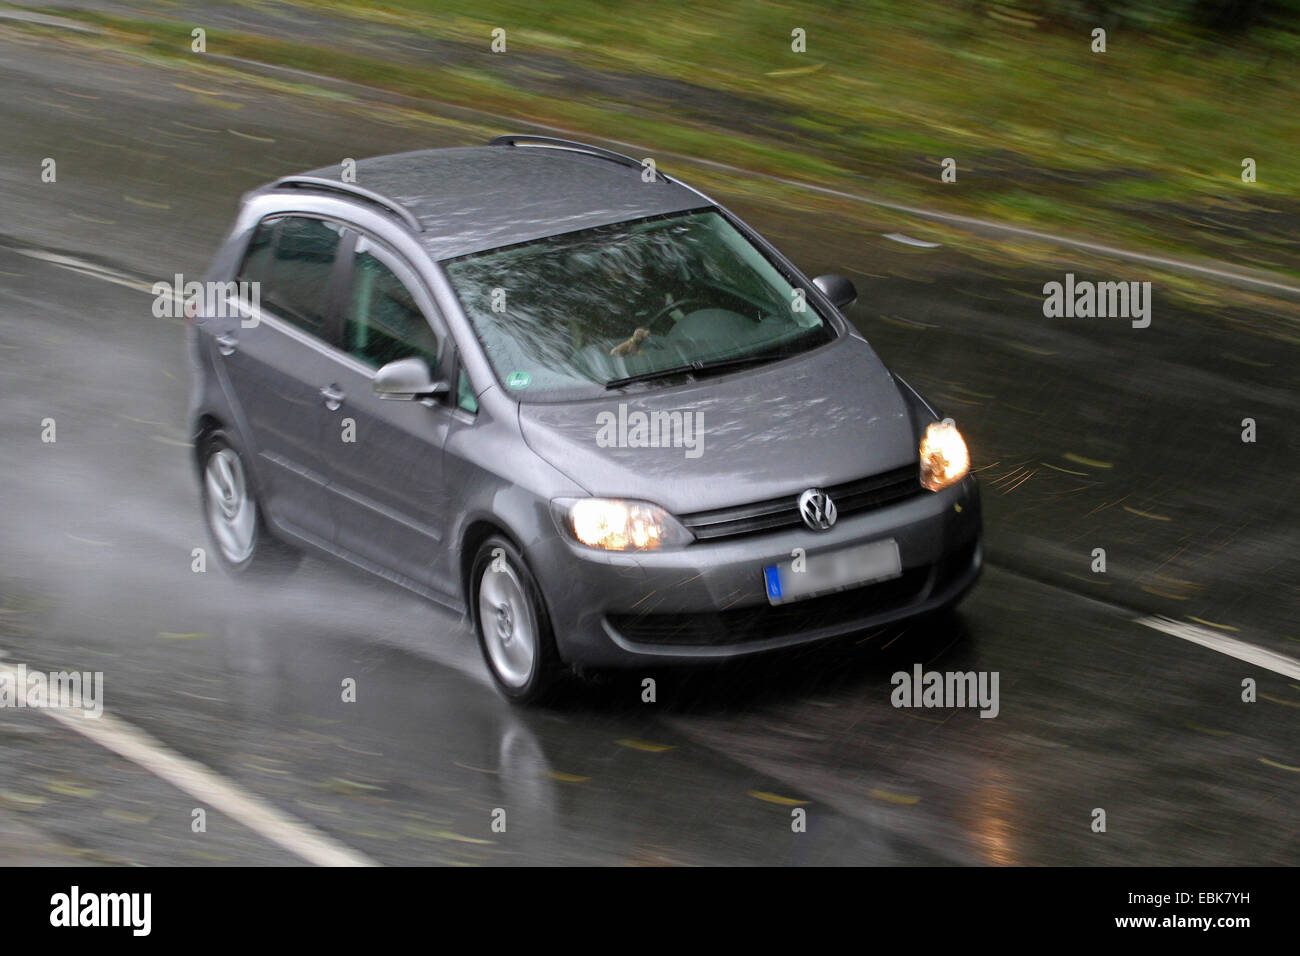 car on rainy street, Germany Stock Photo